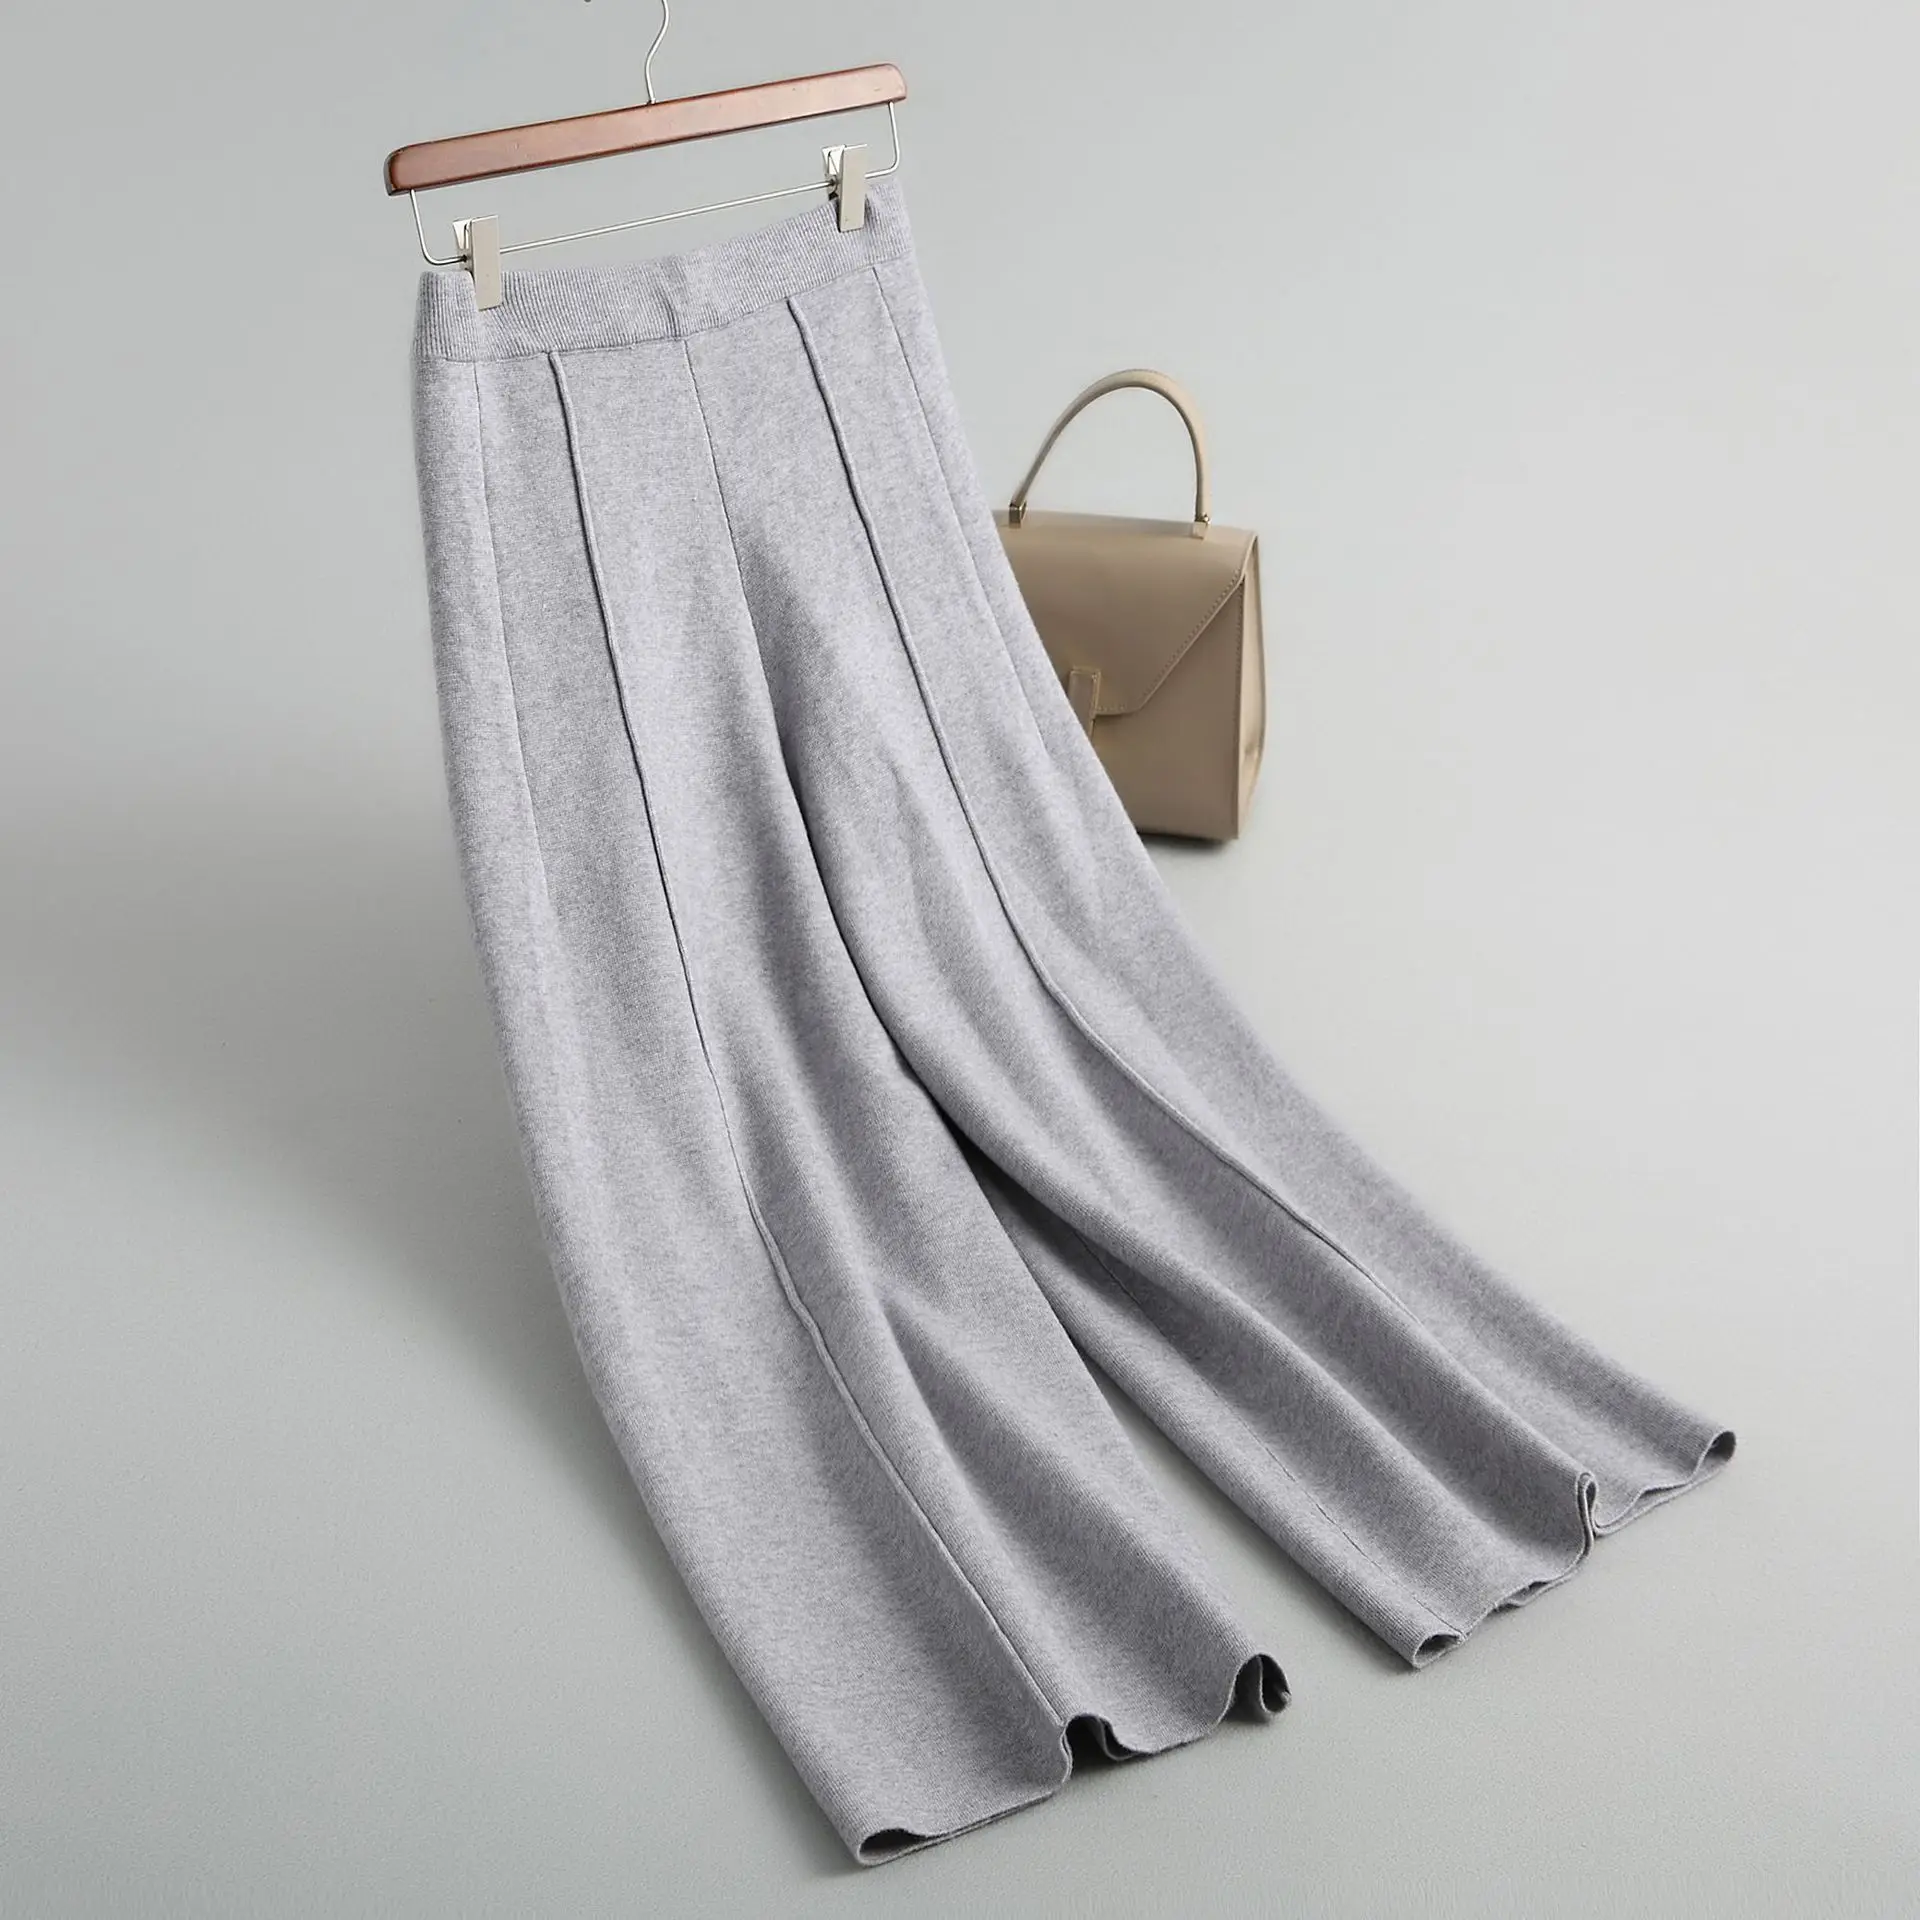 INNASOFAN широкие брюки для женщин осень-зима трикотажные брюки сплошной цвет евро-американская мода шикарные теплые брюки